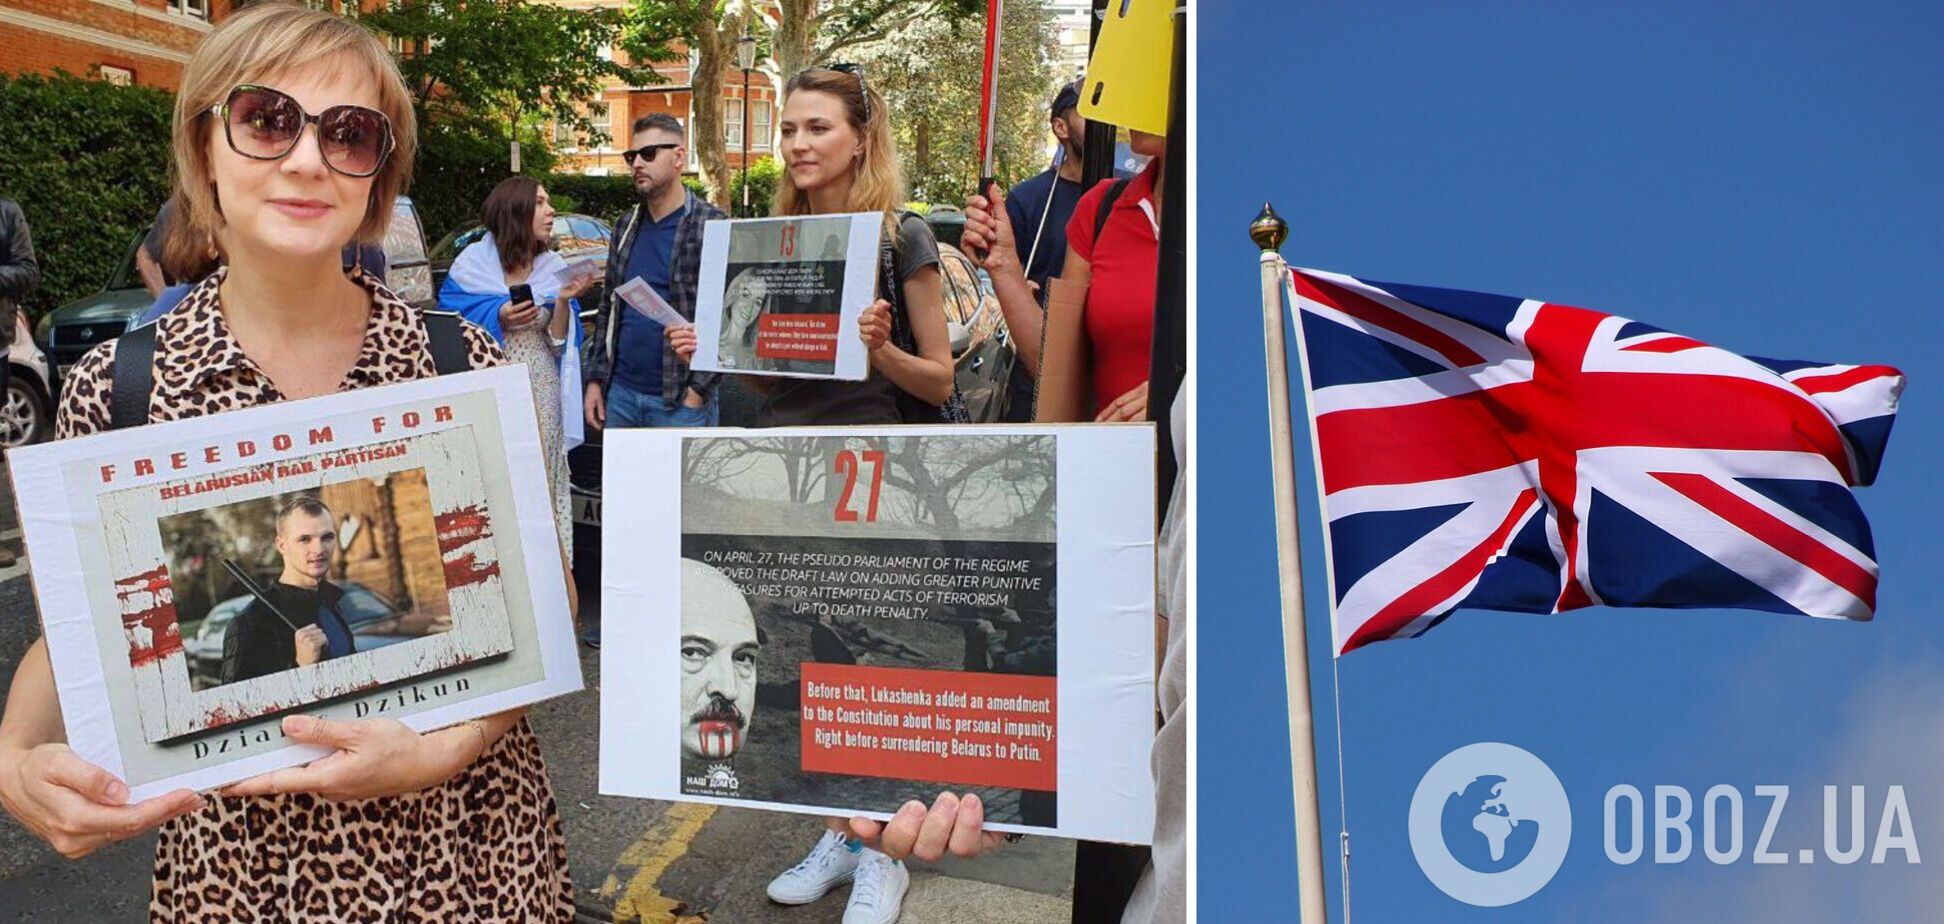 В Лондоне прошла акция в поддержку 'рельсовых партизан' из Беларуси, препятствующих переброске техники РФ. Фото